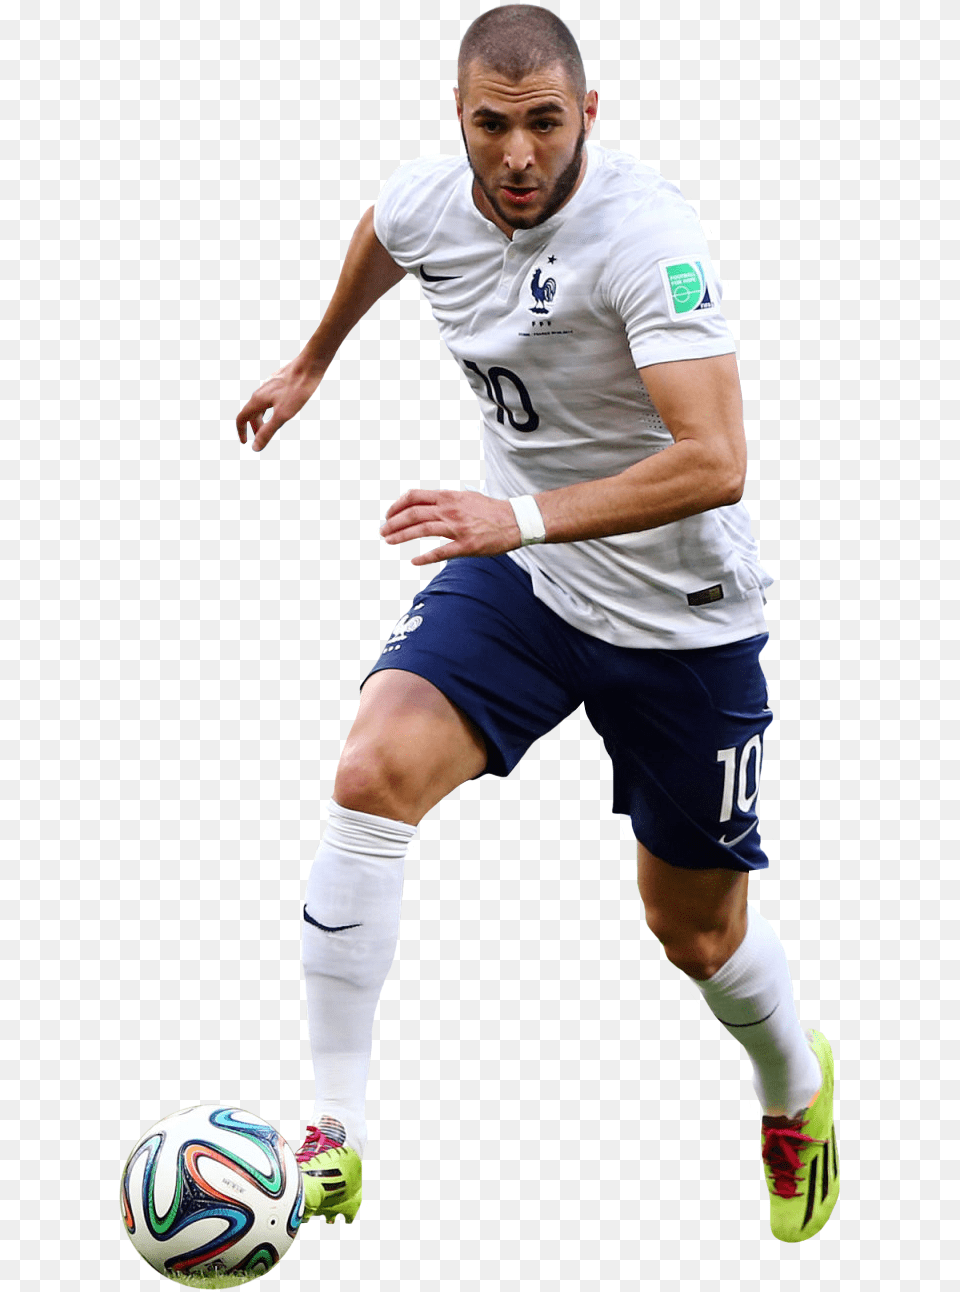 Karim Benzemarender Kick Up A Soccer Ball, Sport, Sphere, Soccer Ball, Football Png Image